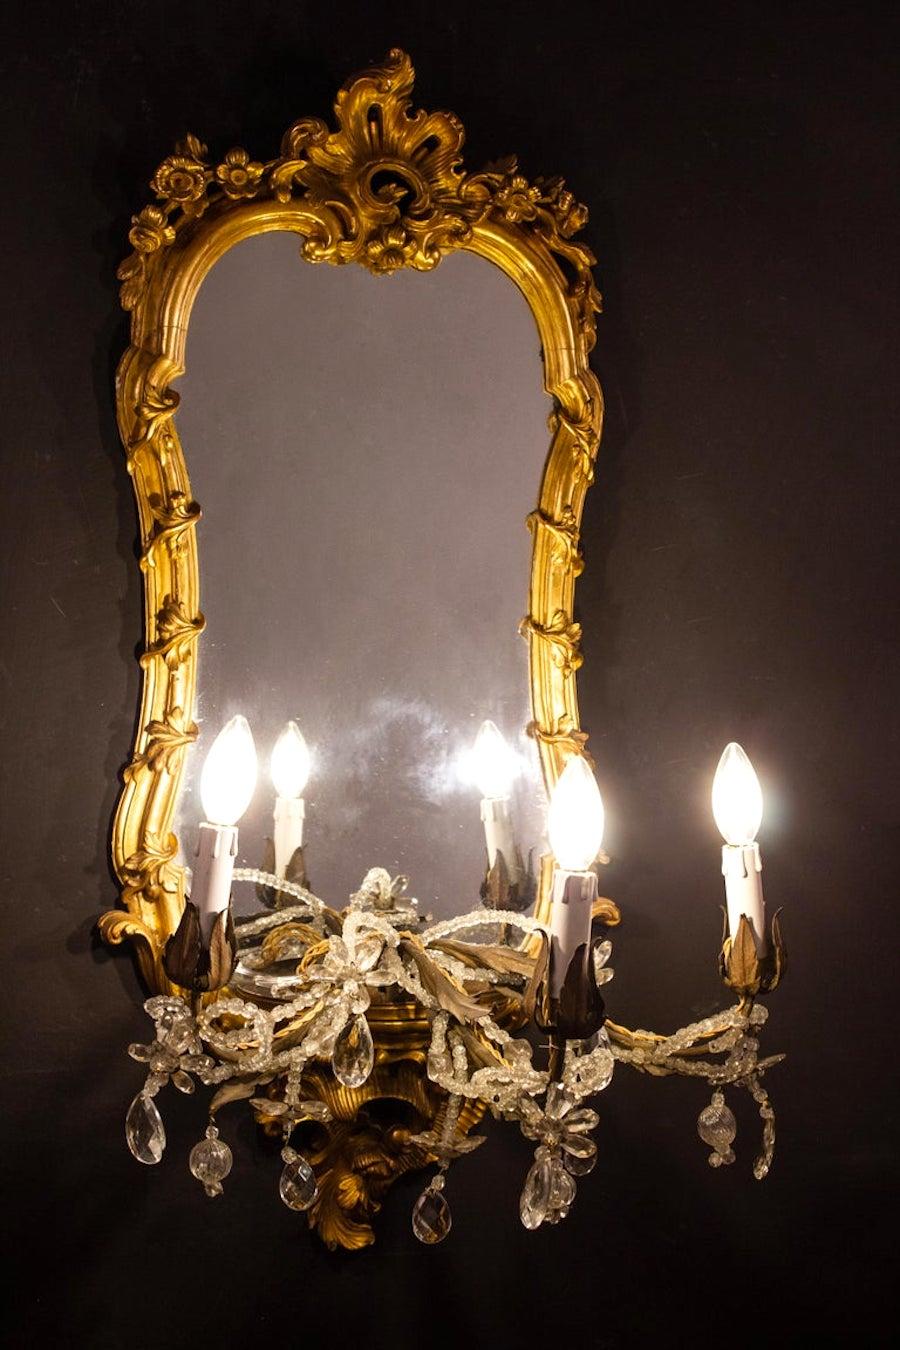 Wunderbares Paar fein geschnitzte und vergoldete Spiegel aus dem 18. Jahrhundert mit drei Kerzenarmen, Roma, 1750.
Die Kerzenarme können auch abgenommen und als Sockel für eine Vase oder eine Porzellanskulptur verwendet werden.
Originalvergoldung